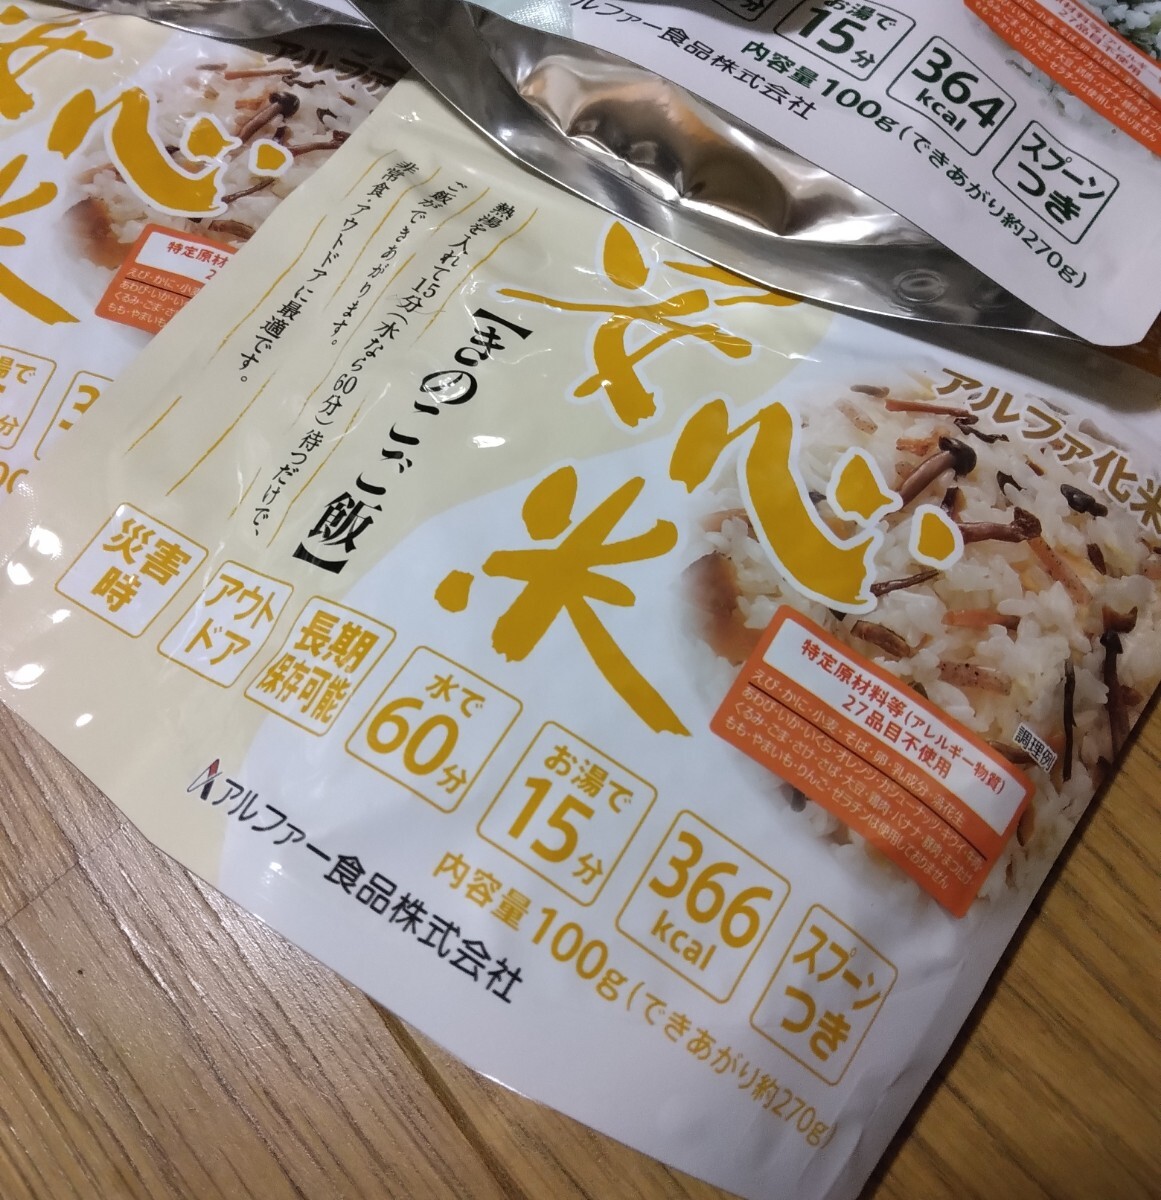 1袋定価410円 新品 安心米 アルファ化米わかめご飯ときのこご飯6食セット